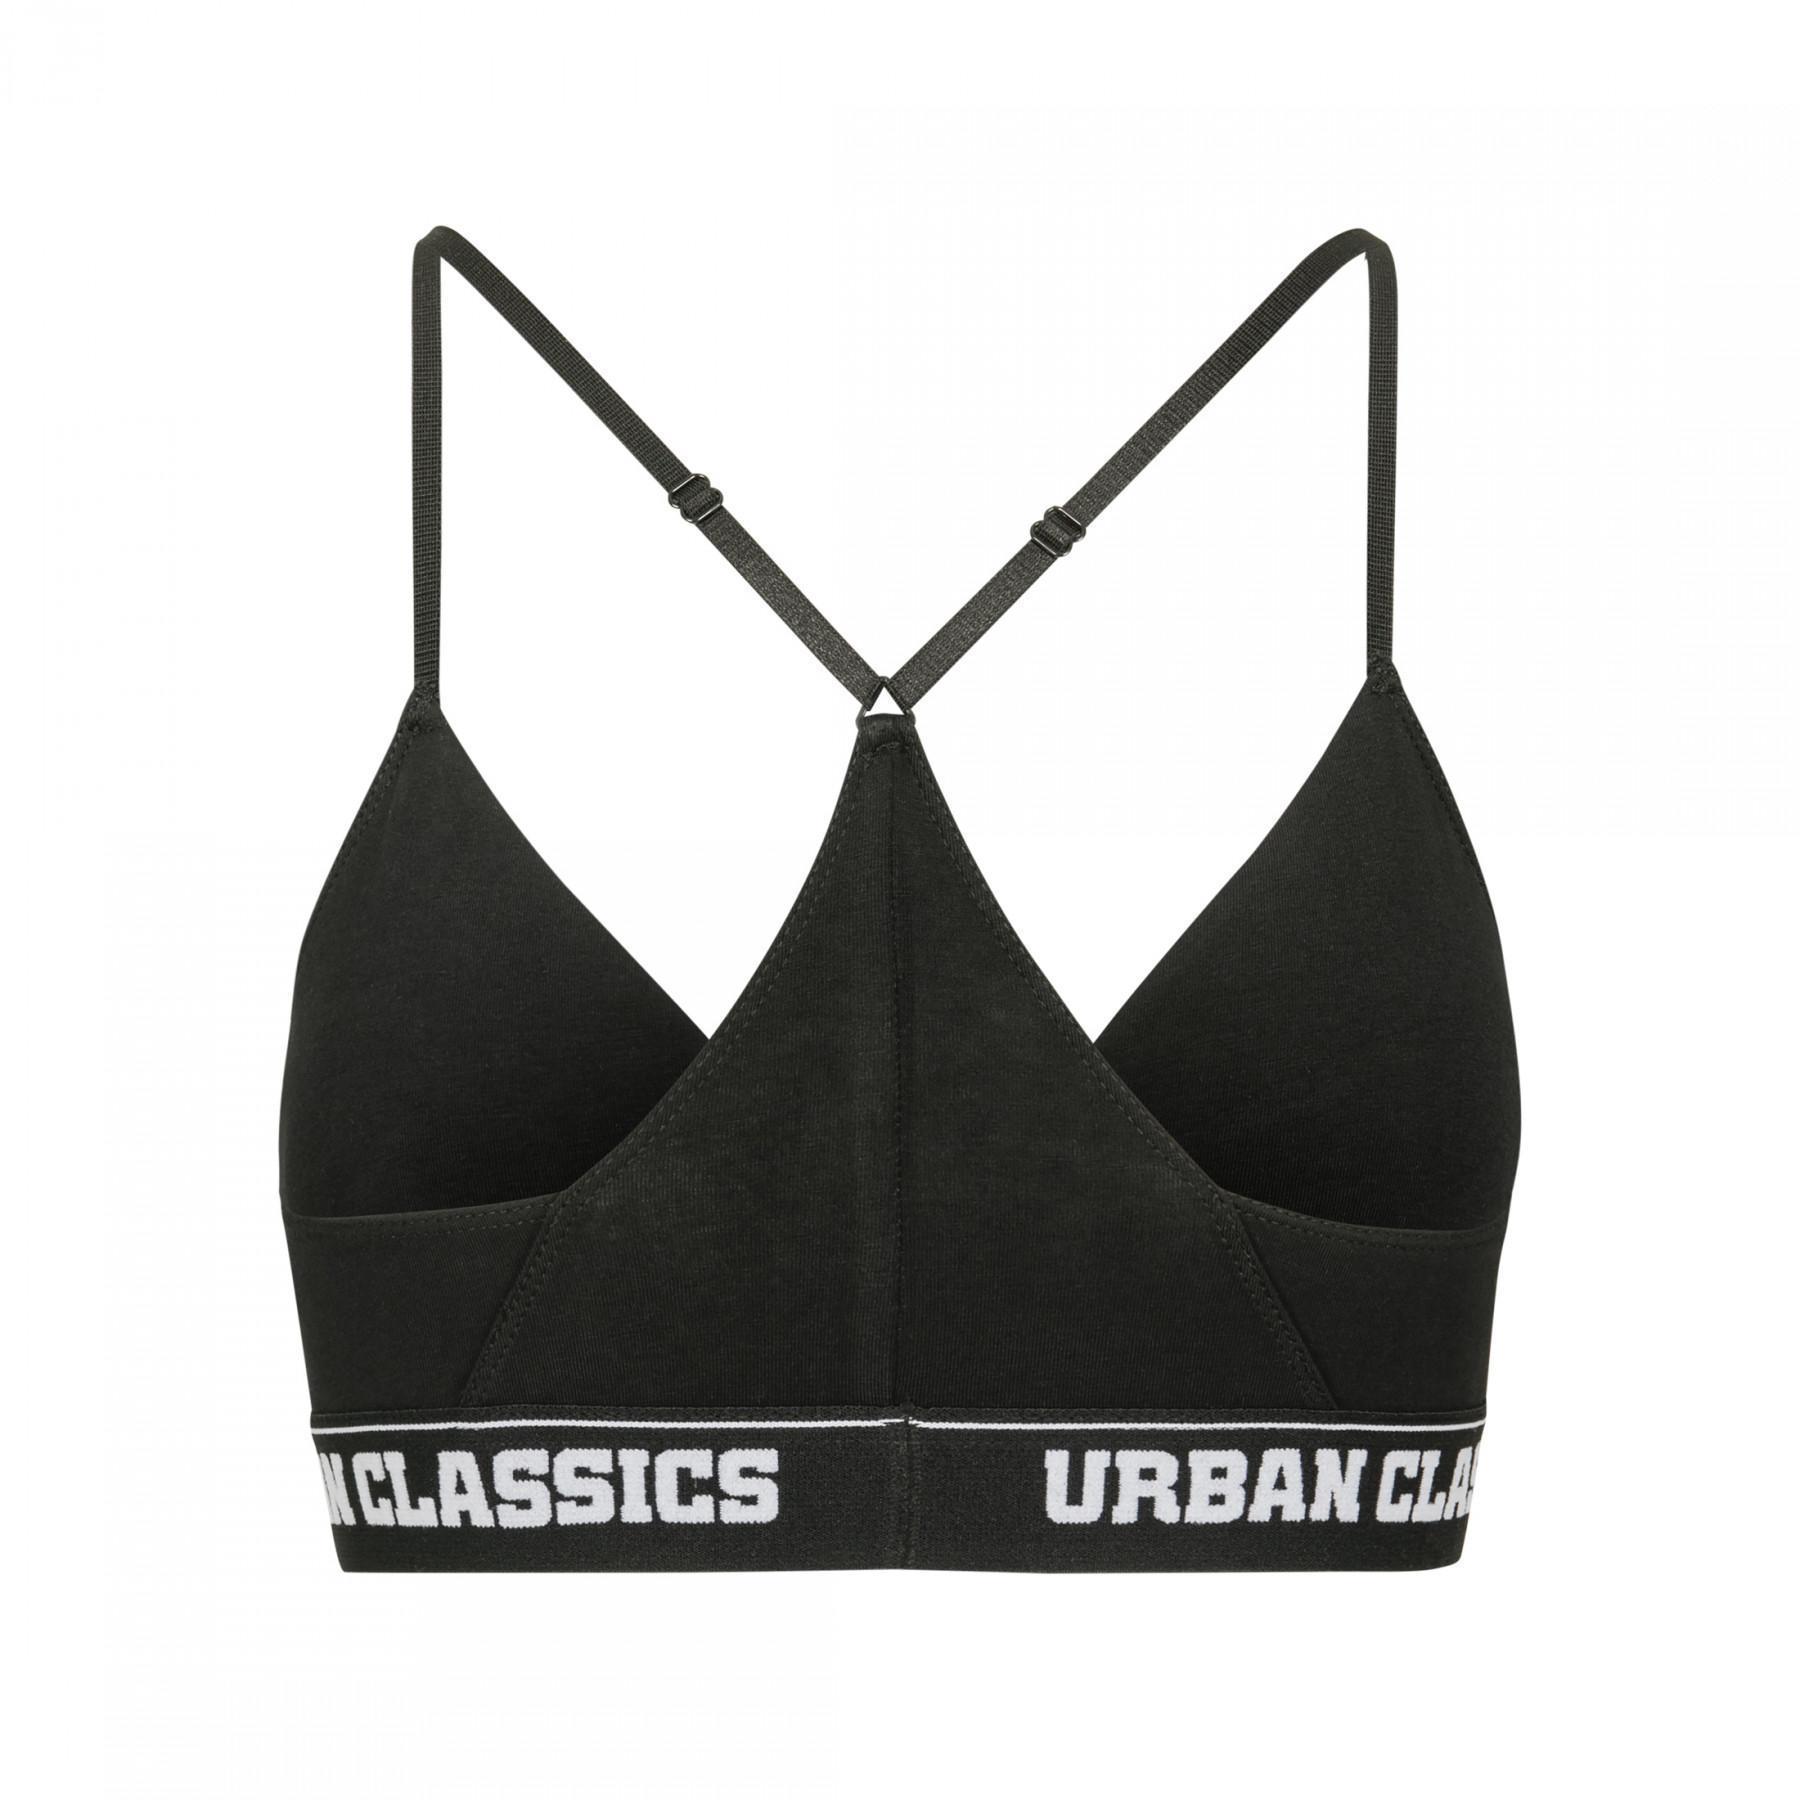 Damen Urban Classic Triangel-Logo-BH